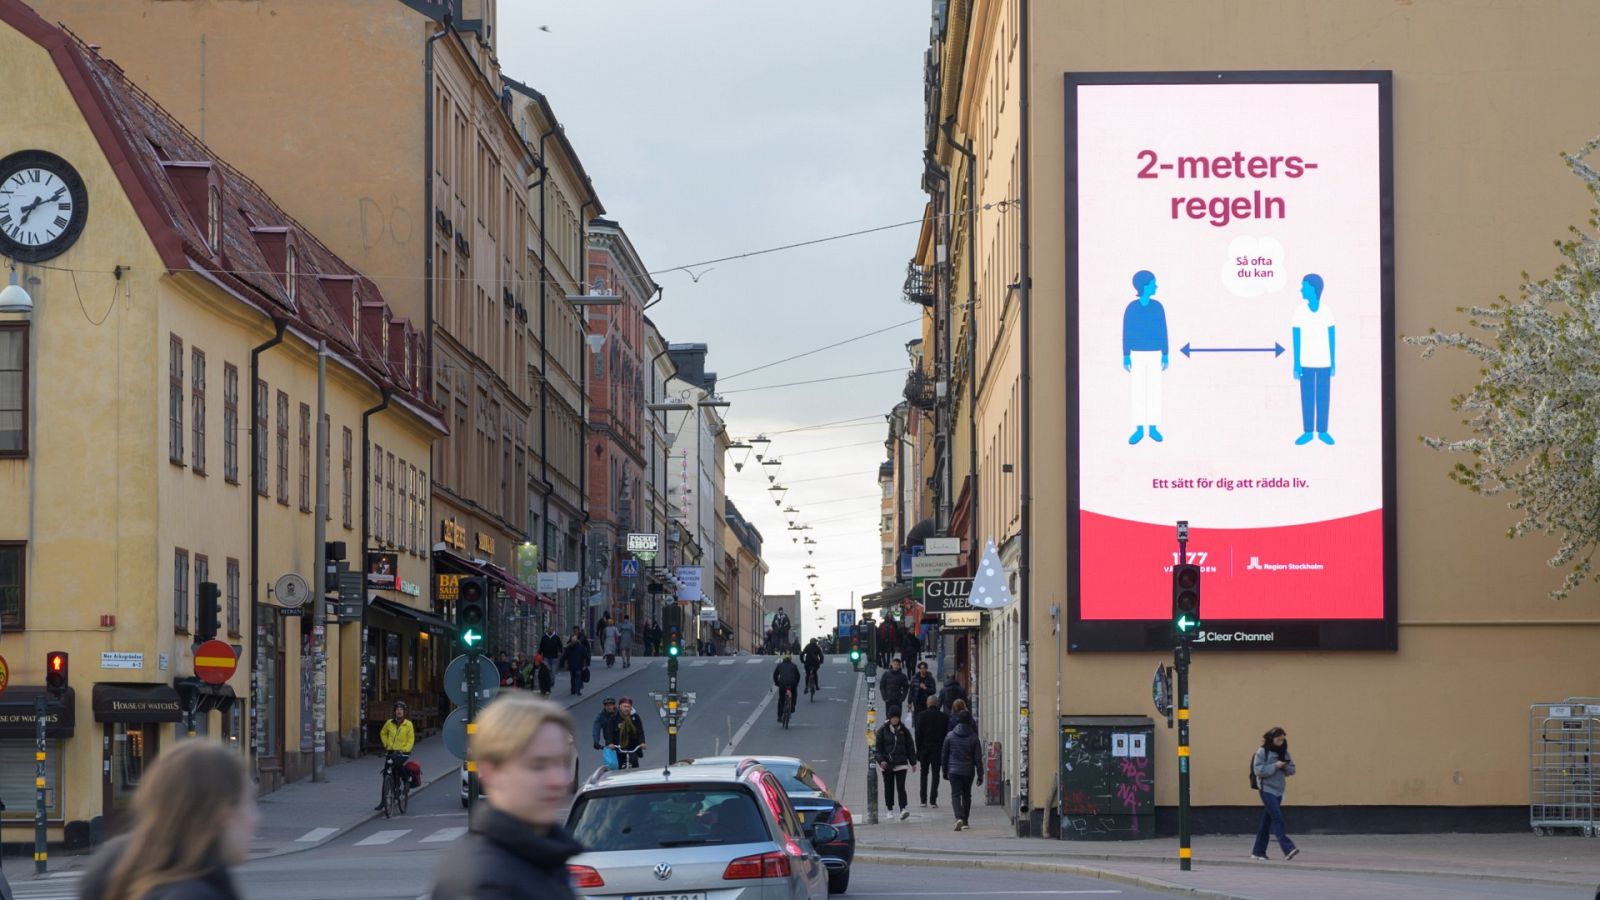 Cartel publicitario en Estocolmo recordando mantener la distancia entre personas